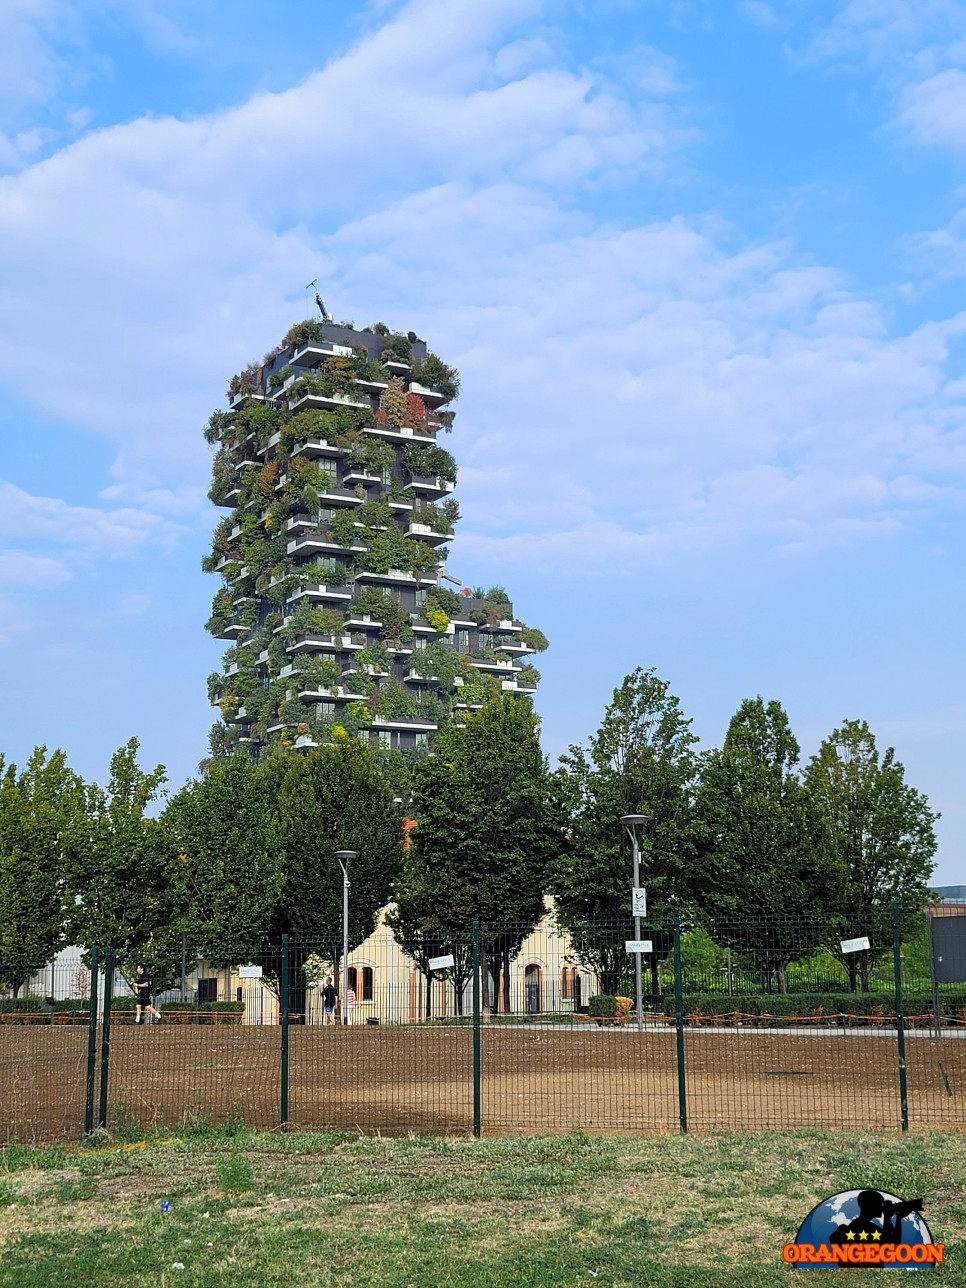 (이탈리아 밀라노 / 보스코 베르티칼레) 아파트 옆에 숲을 만들 수 없다면 아예 아파트를 숲으로 만들자! '숲이 된 아파트' Bosco Verticale